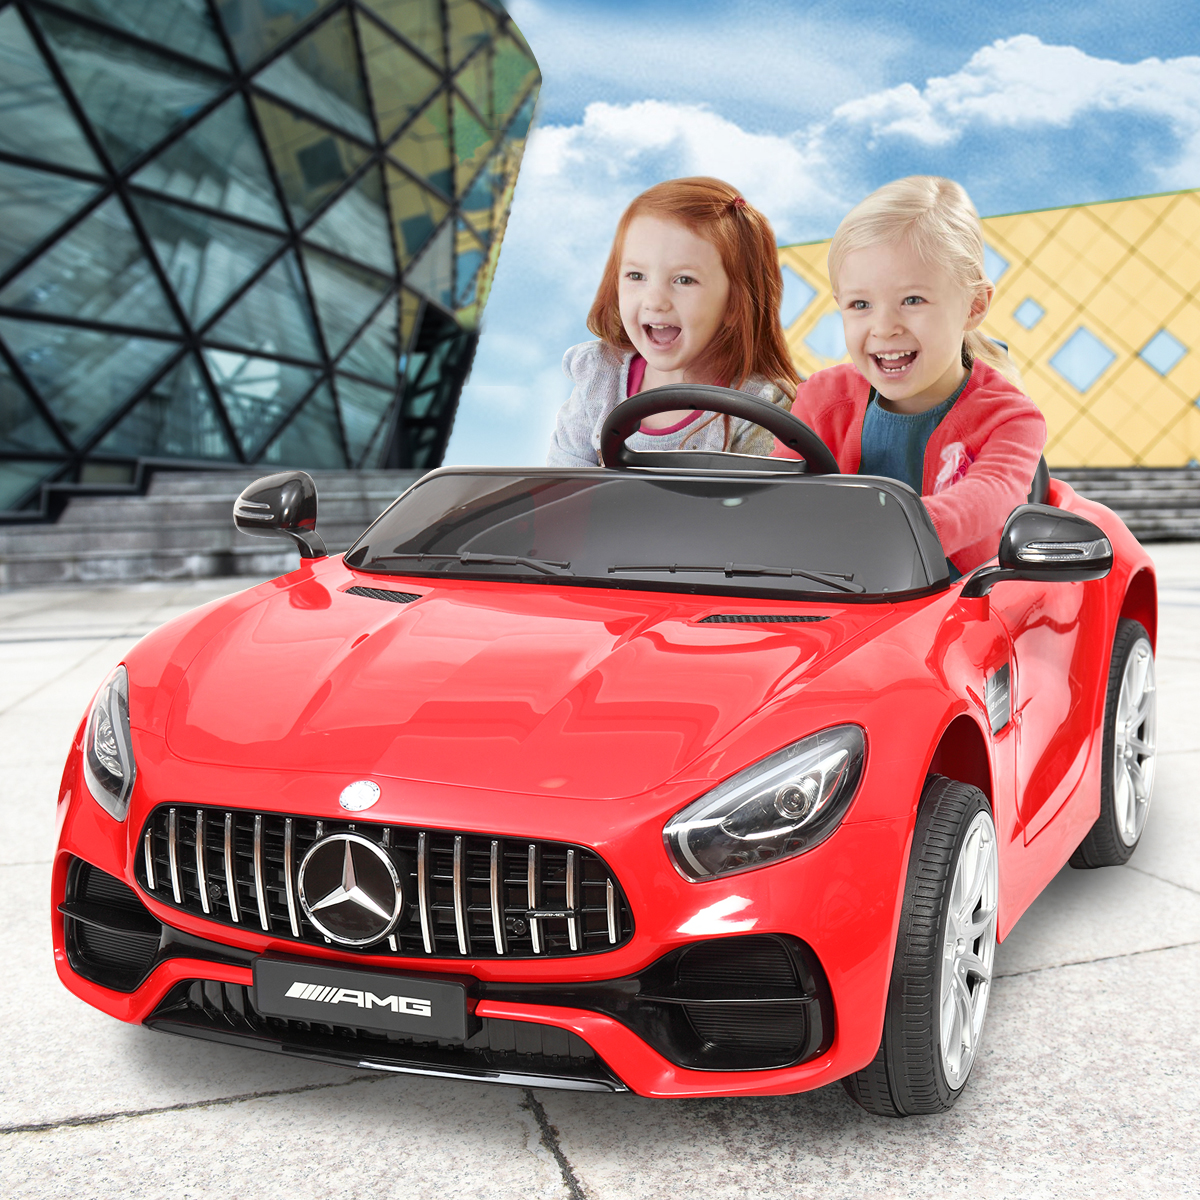 take your kids car shopping